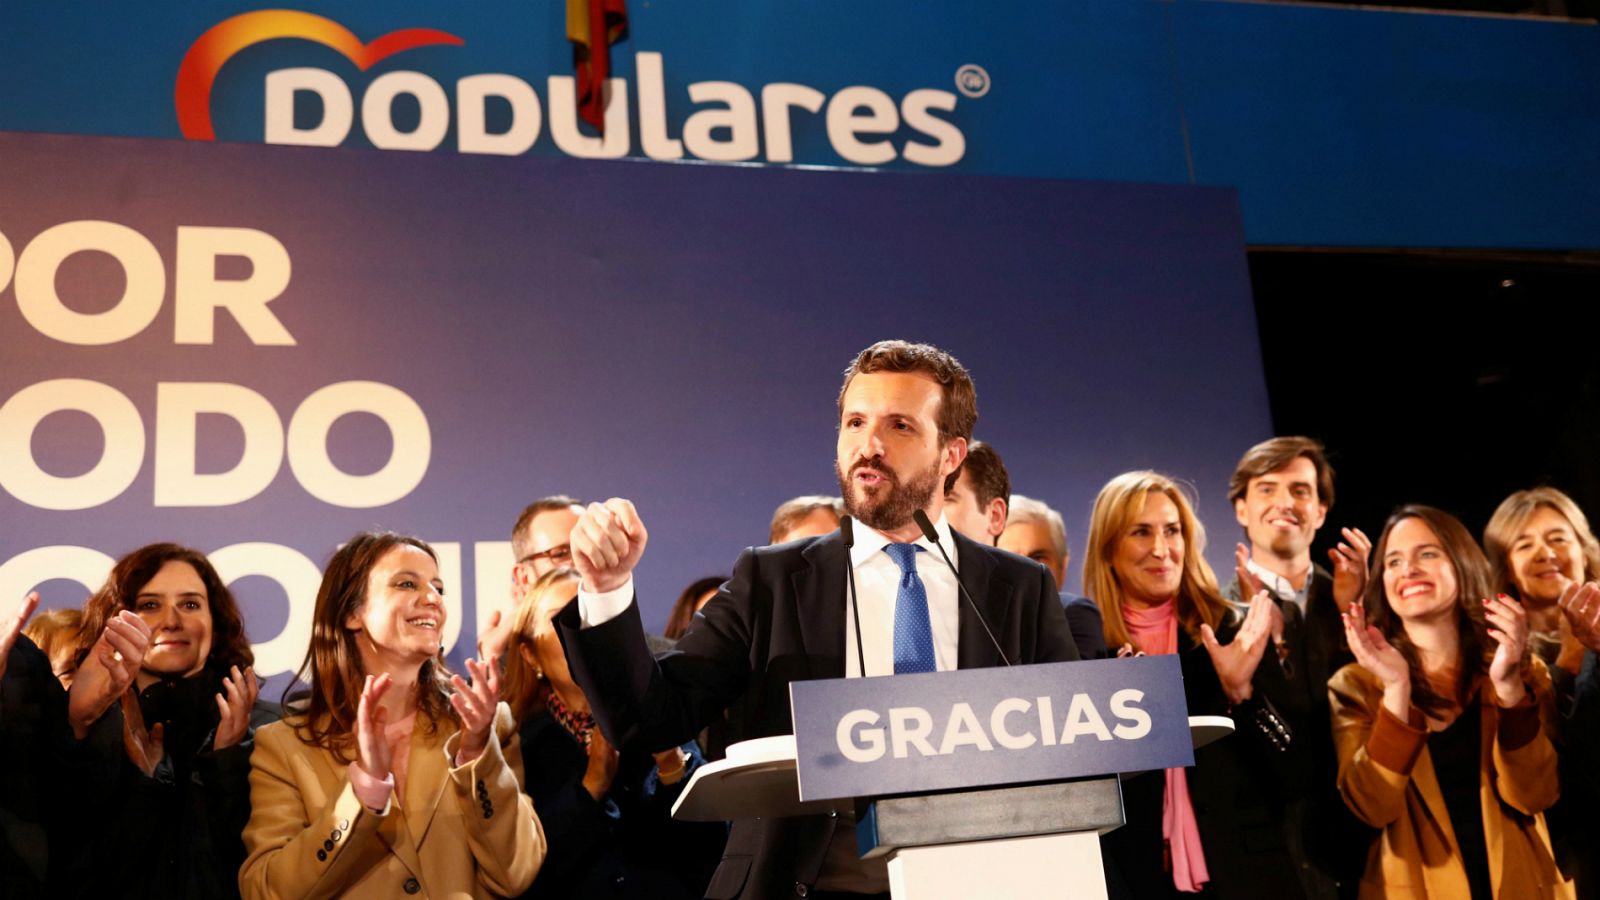 Elecciones generales Casado | Casado: "Somos claramente una alternativa al gobierno de izquierdas"- RTVE.es